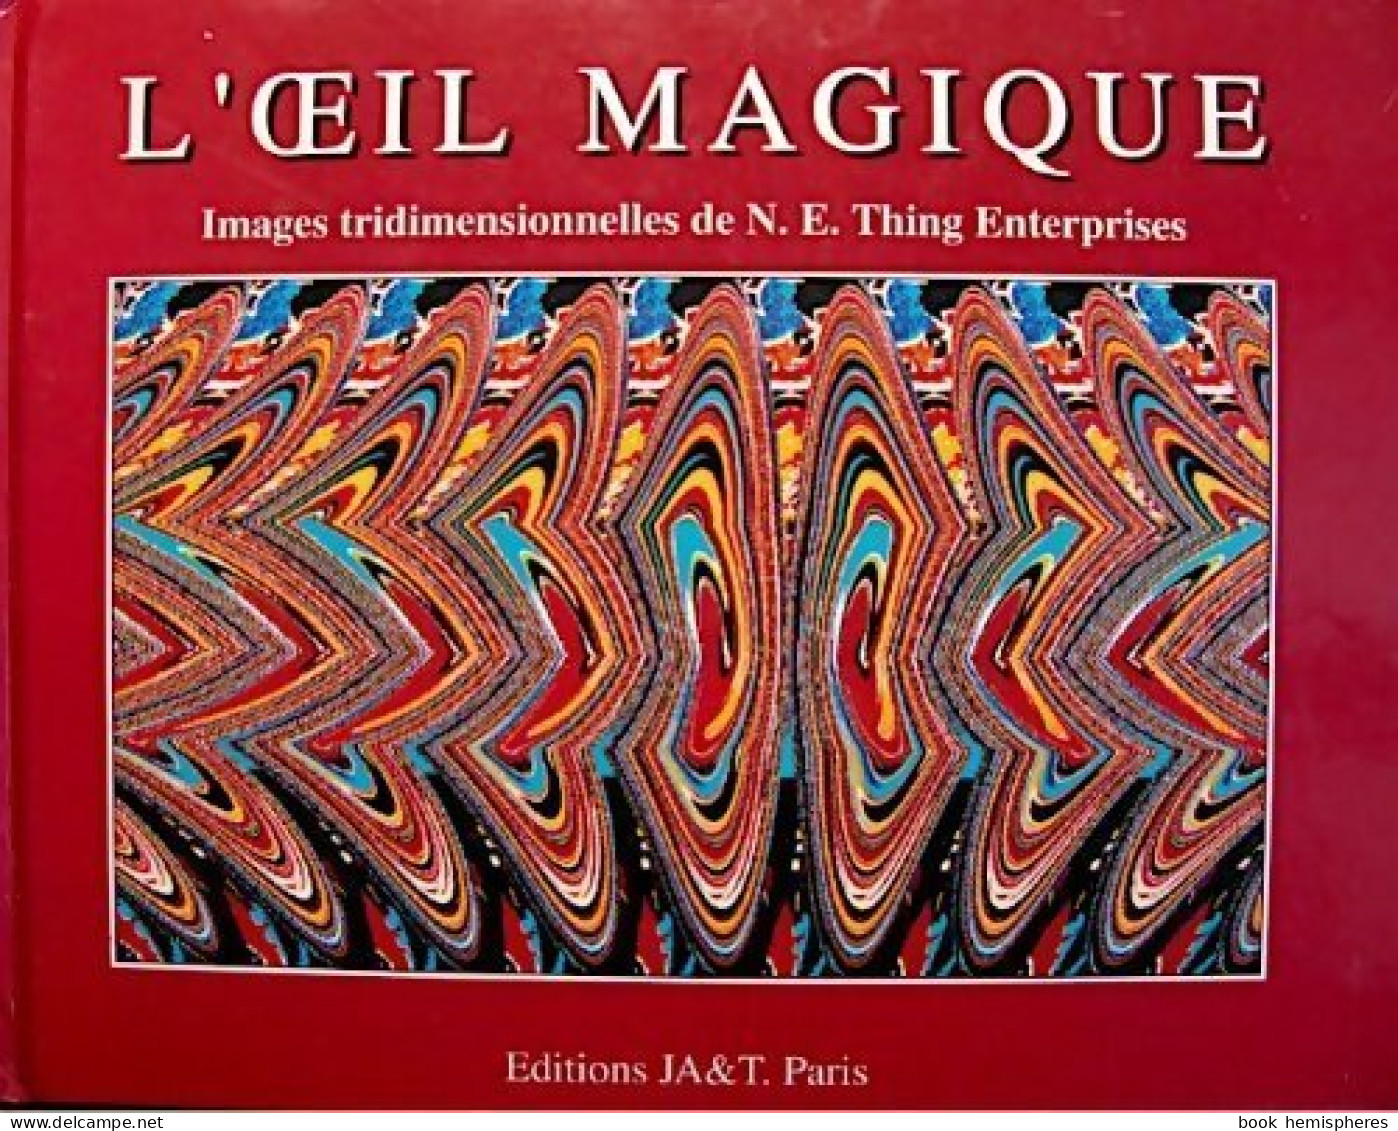 L'oeil Magique Tome I (1990) De Collectif - Giochi Di Società